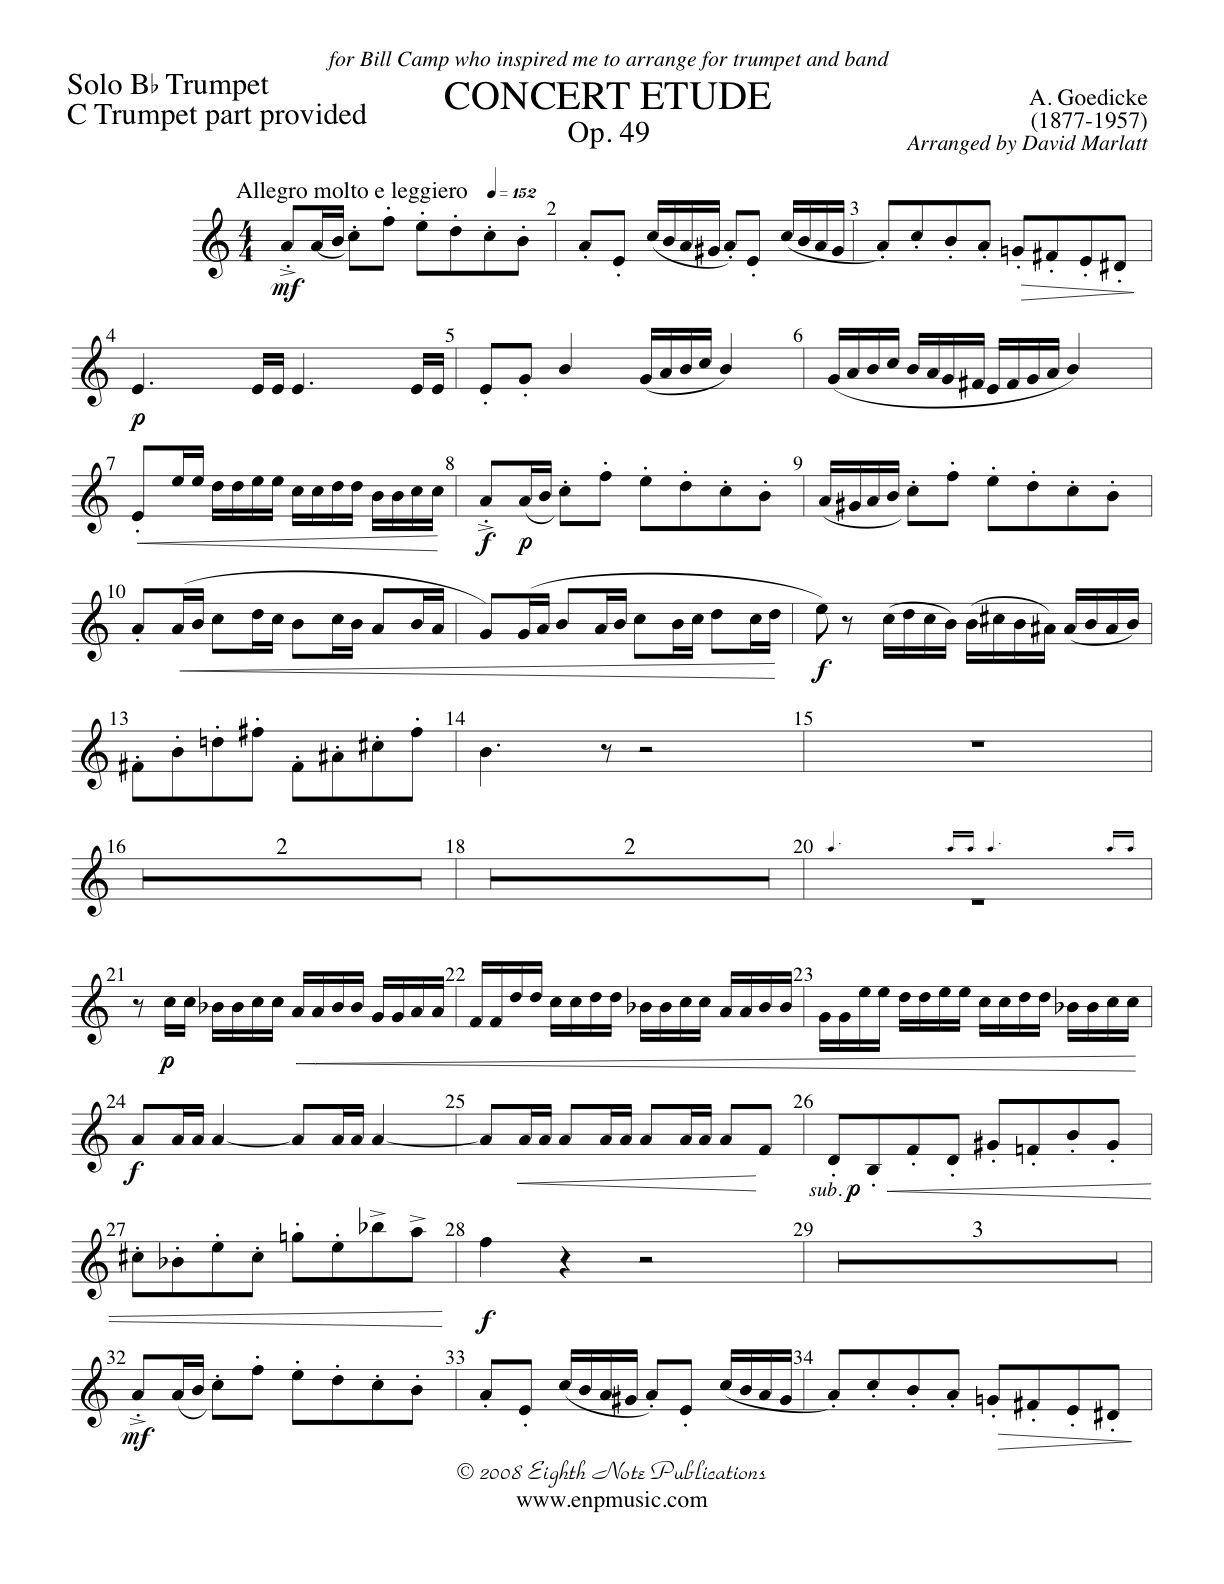 goedicke trumpet concerto pdf